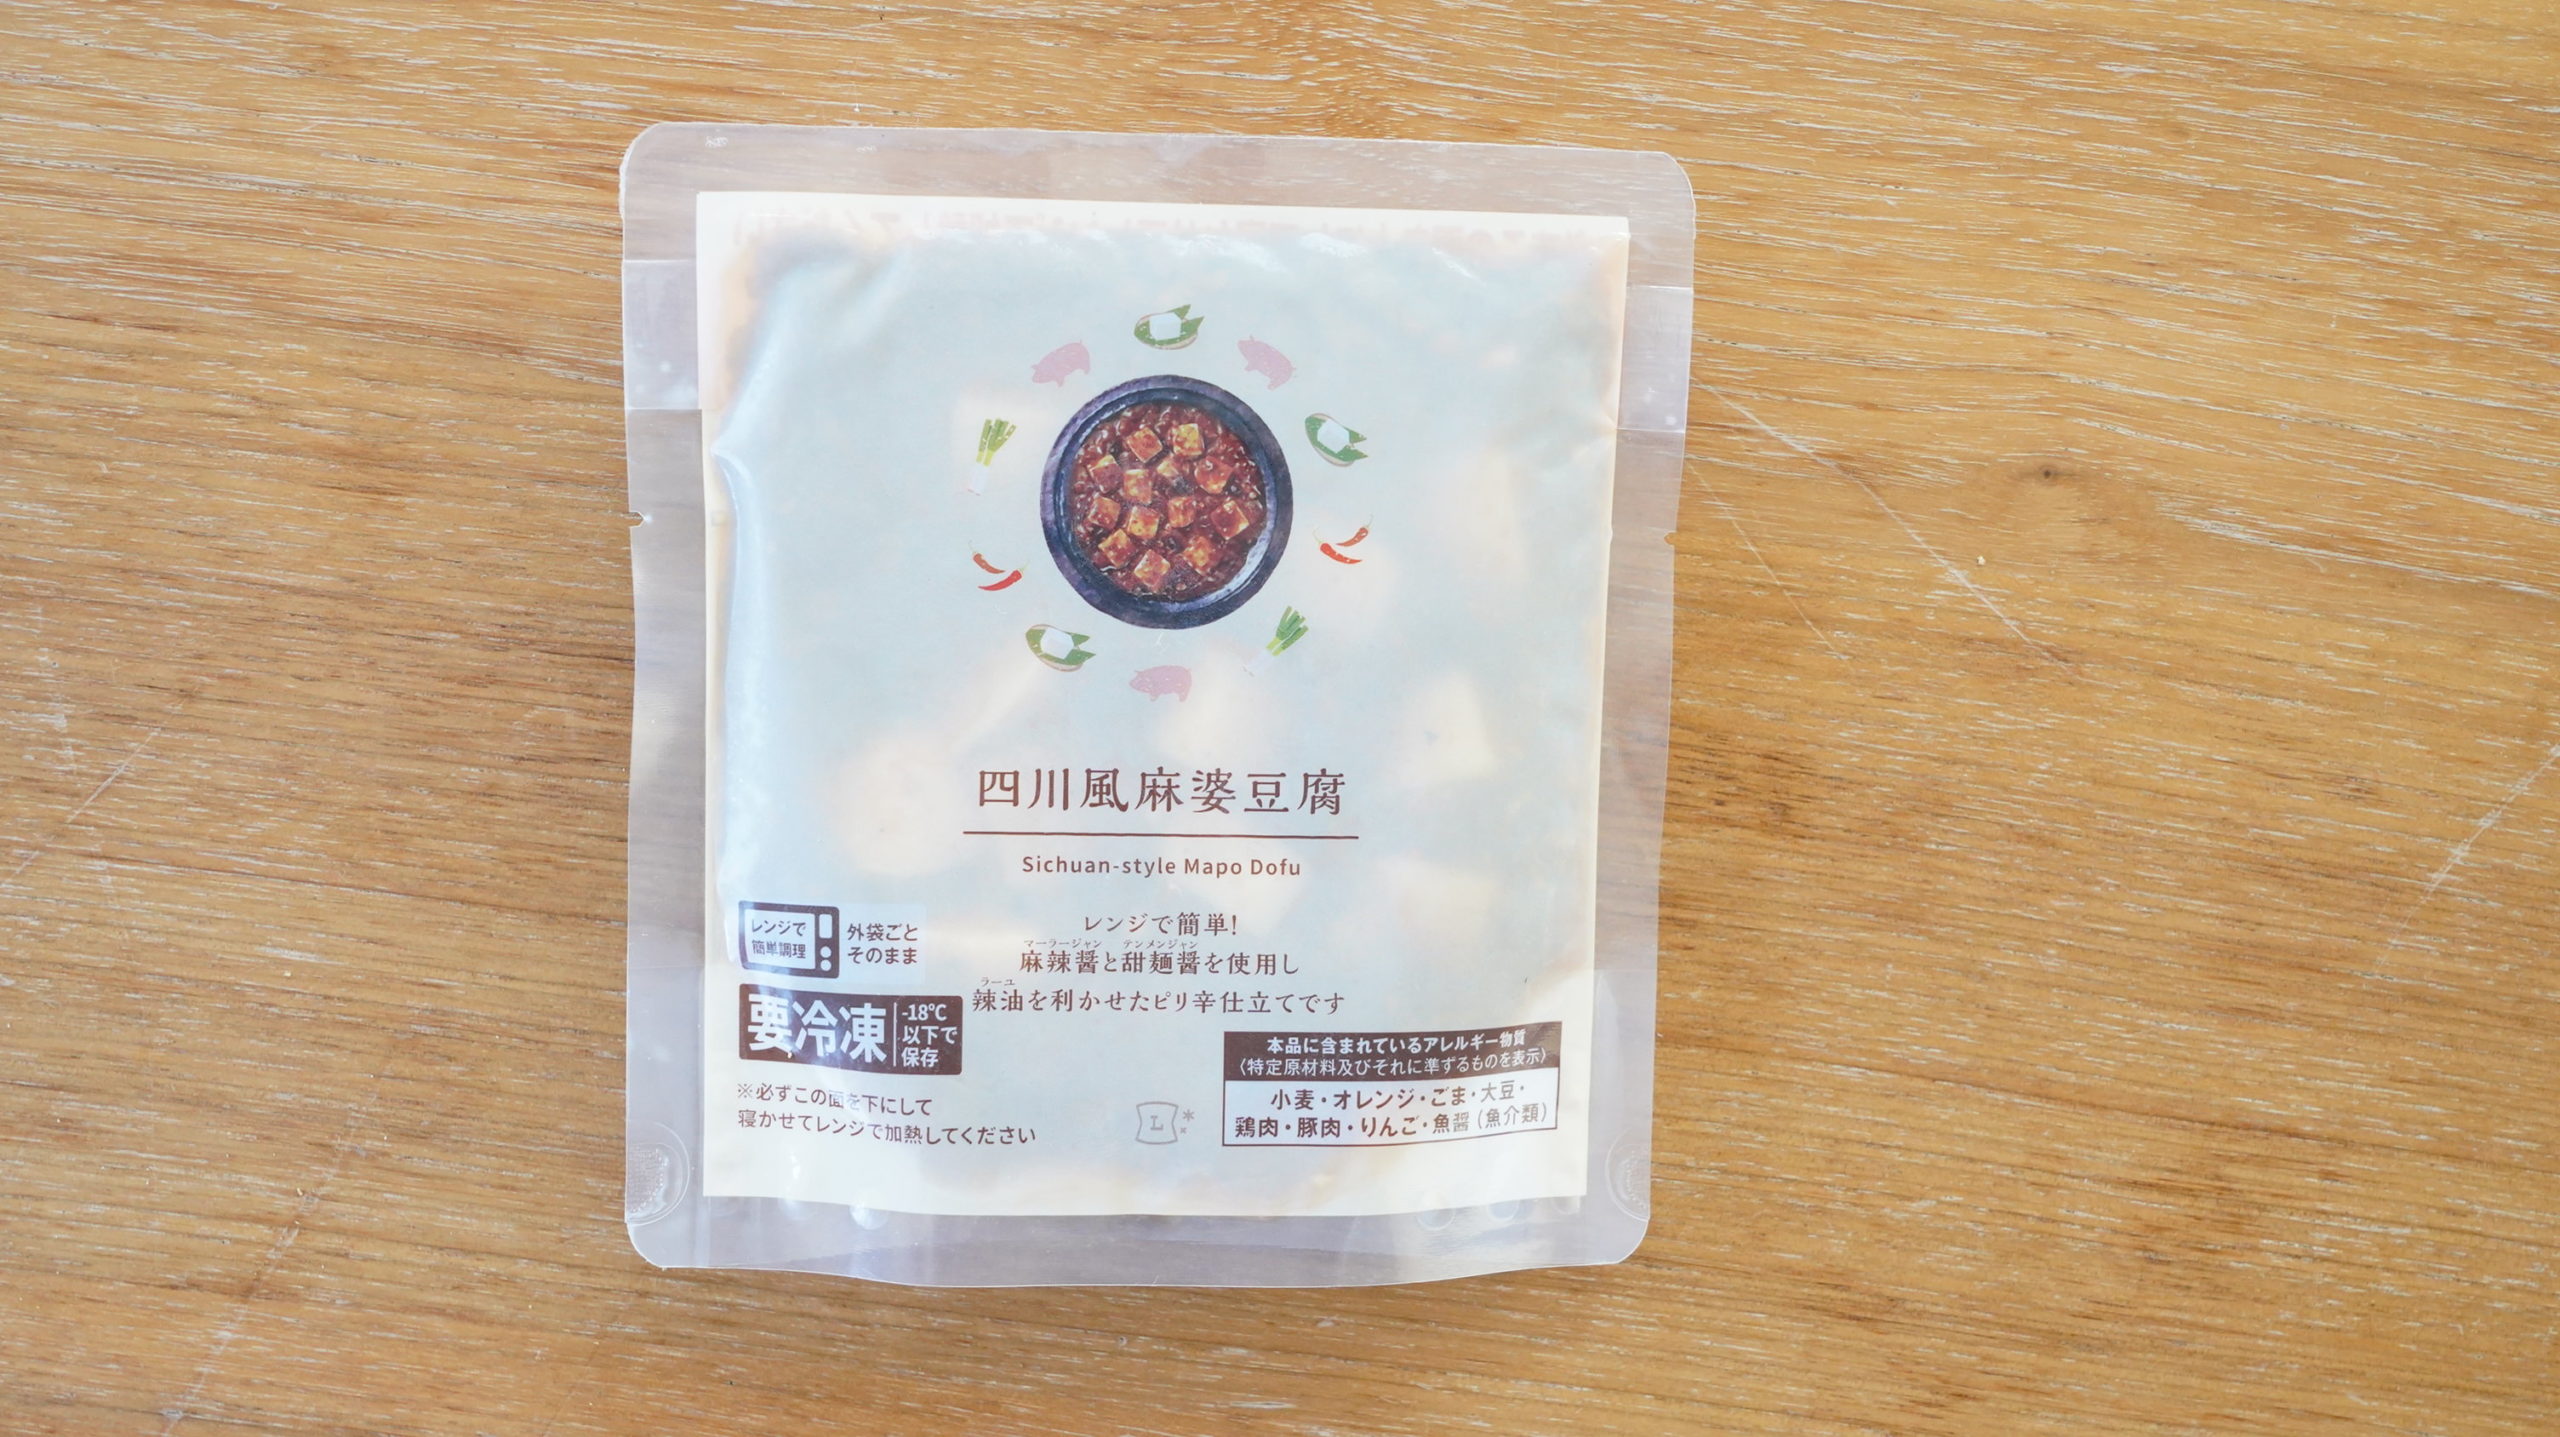 ローソンの冷凍食品「四川風麻婆豆腐」のパッケージ写真